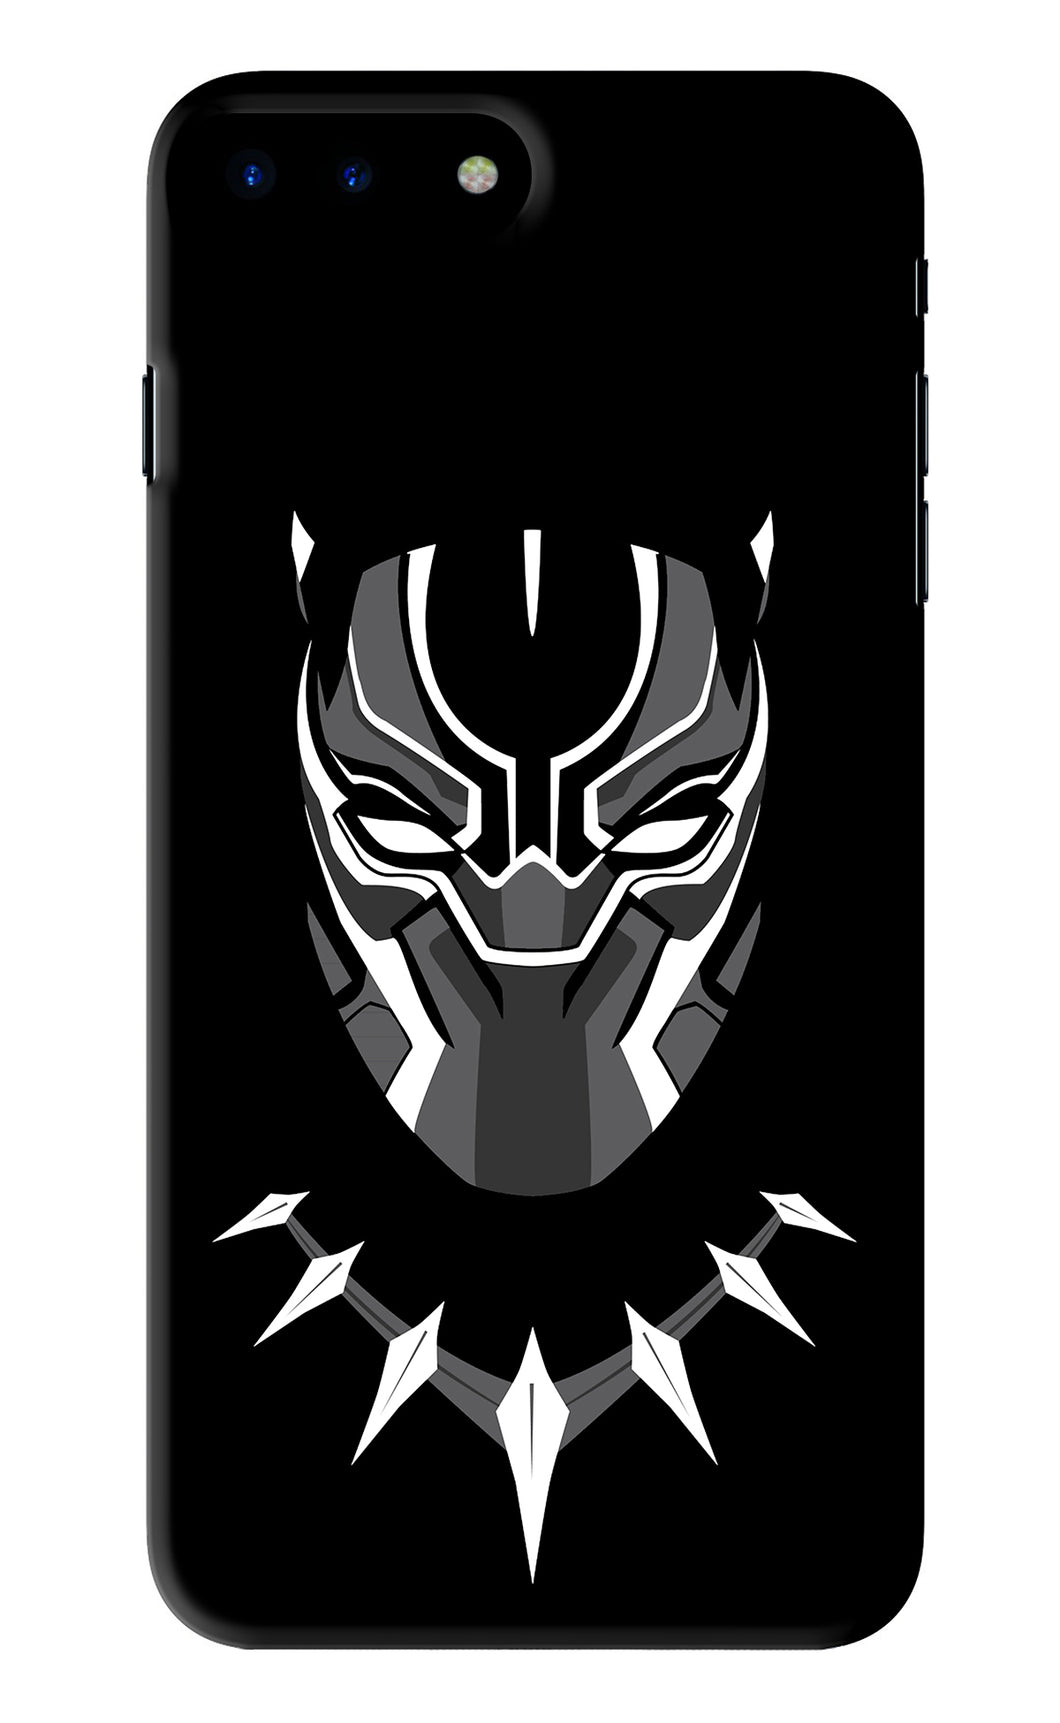 Black Panther iPhone 8 Plus Back Skin Wrap